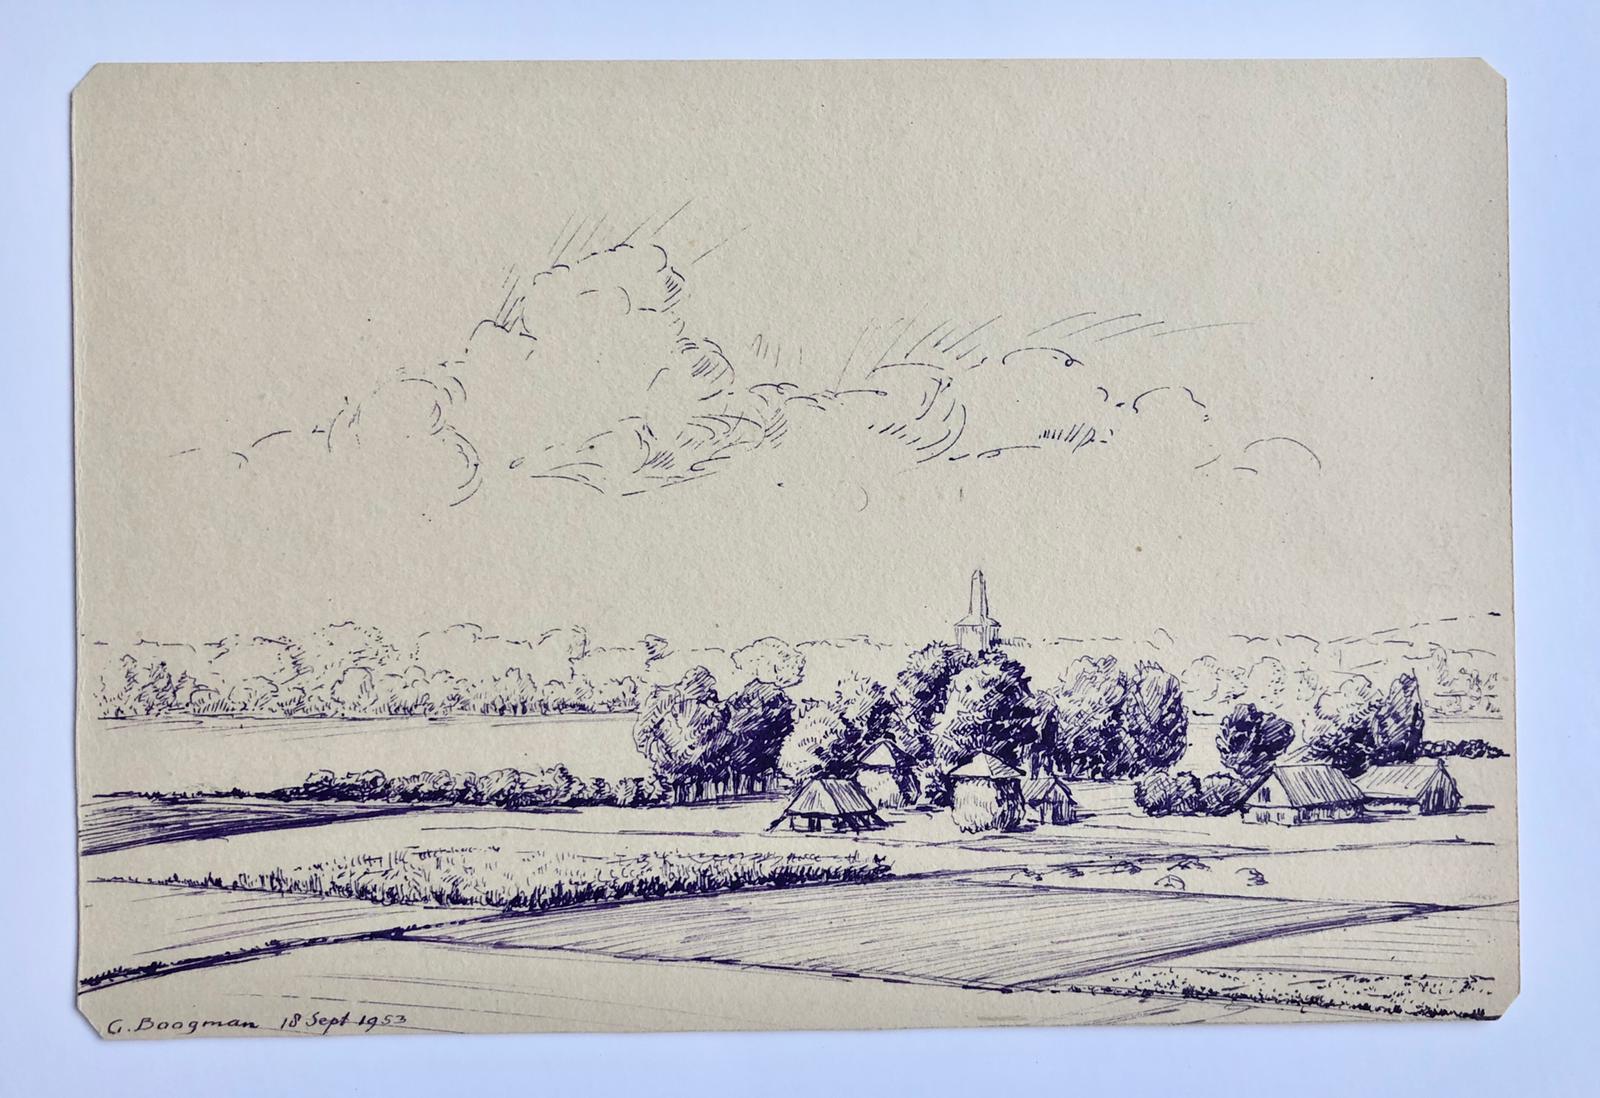  - [Modern pen drawing, 1953] Gezicht op de westelyke uitloper van de Goudsberg richting Barneveld. Pentekening door G. Boogman uit Arnhem, 1953. 12x18 cm.